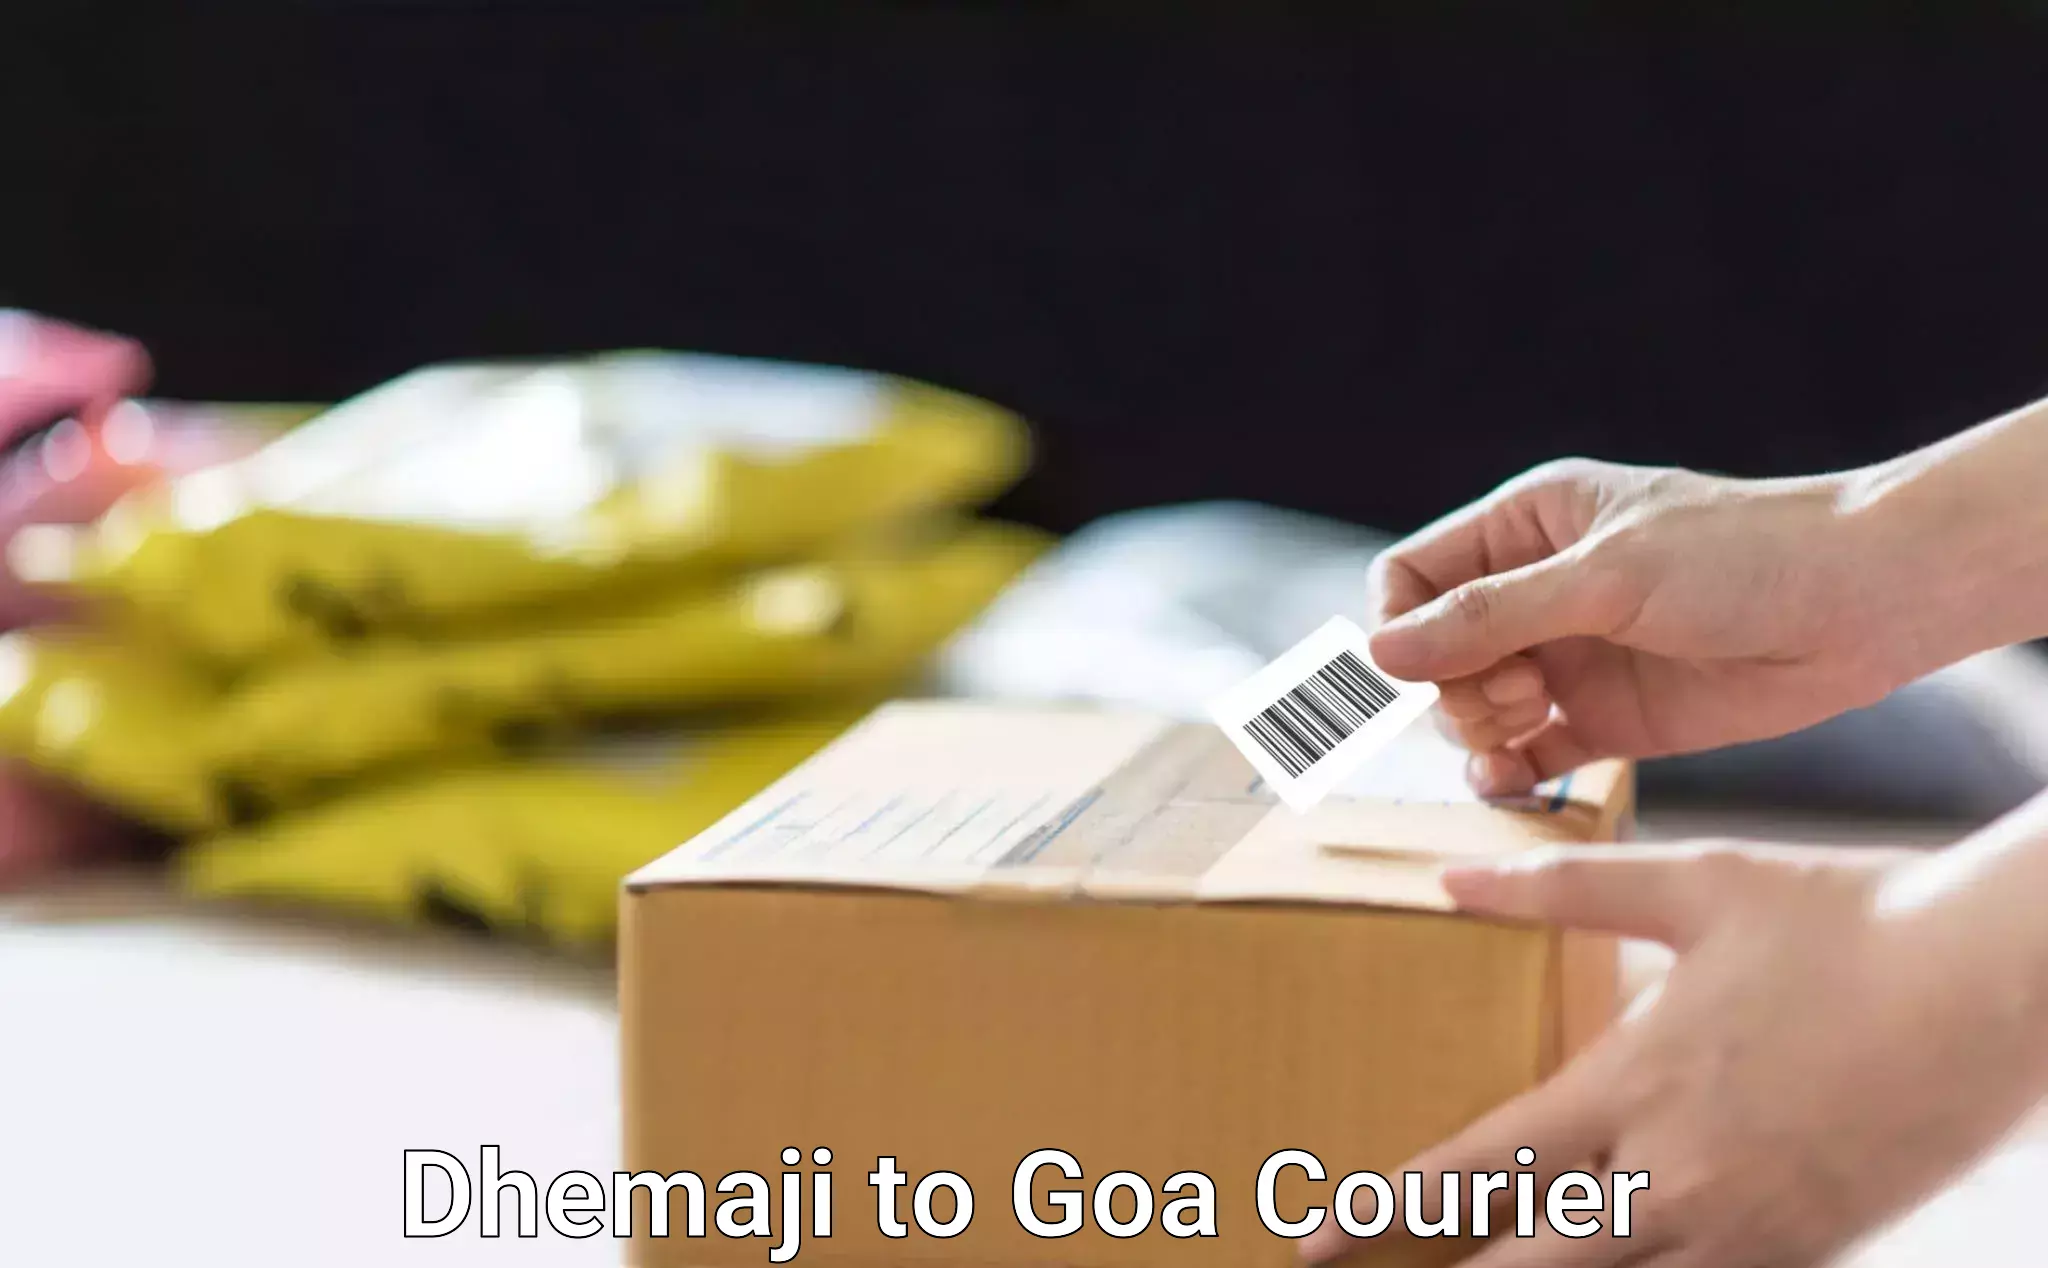 Express postal services Dhemaji to Goa